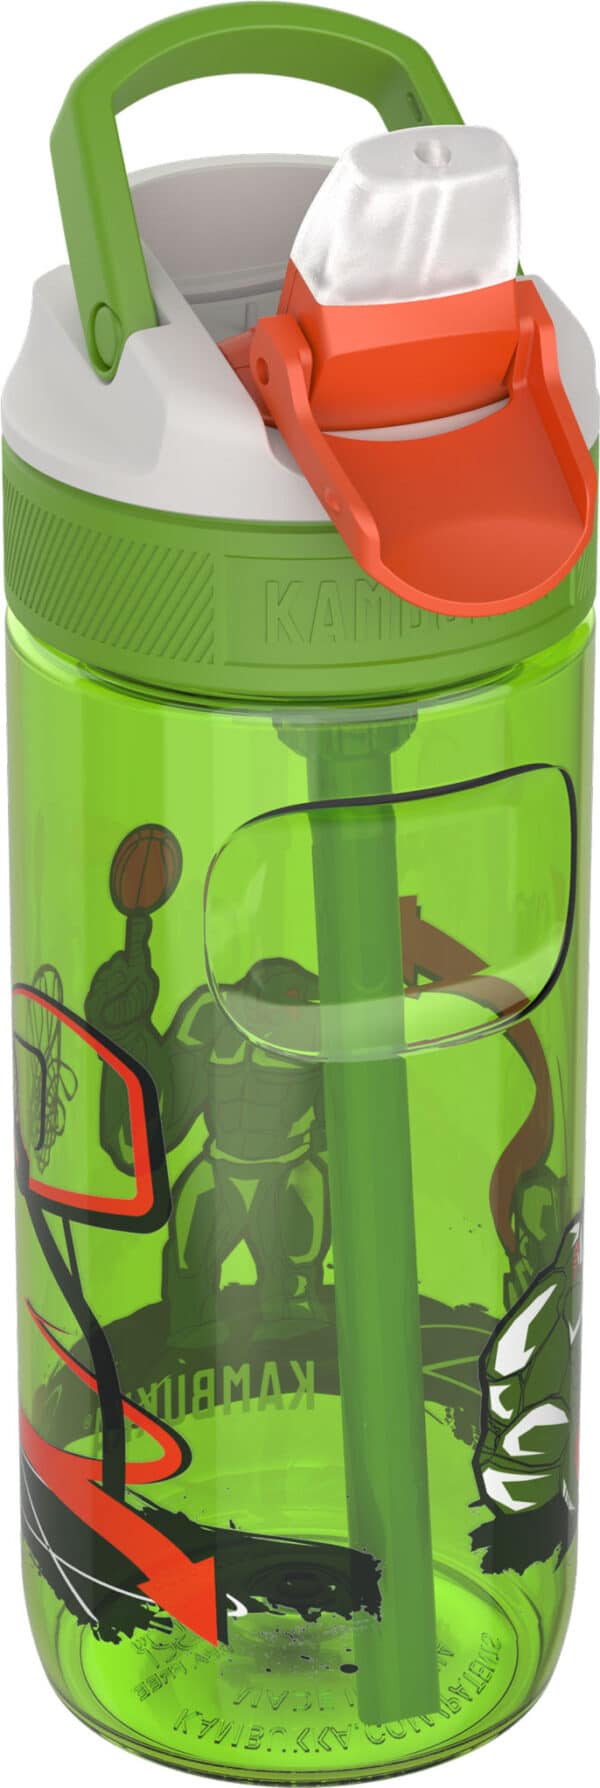 בקבוק שתיה ילדים 500 מ"ל ירוק￼ Kambukka Lagoon Basket Robo קמבוקה￼